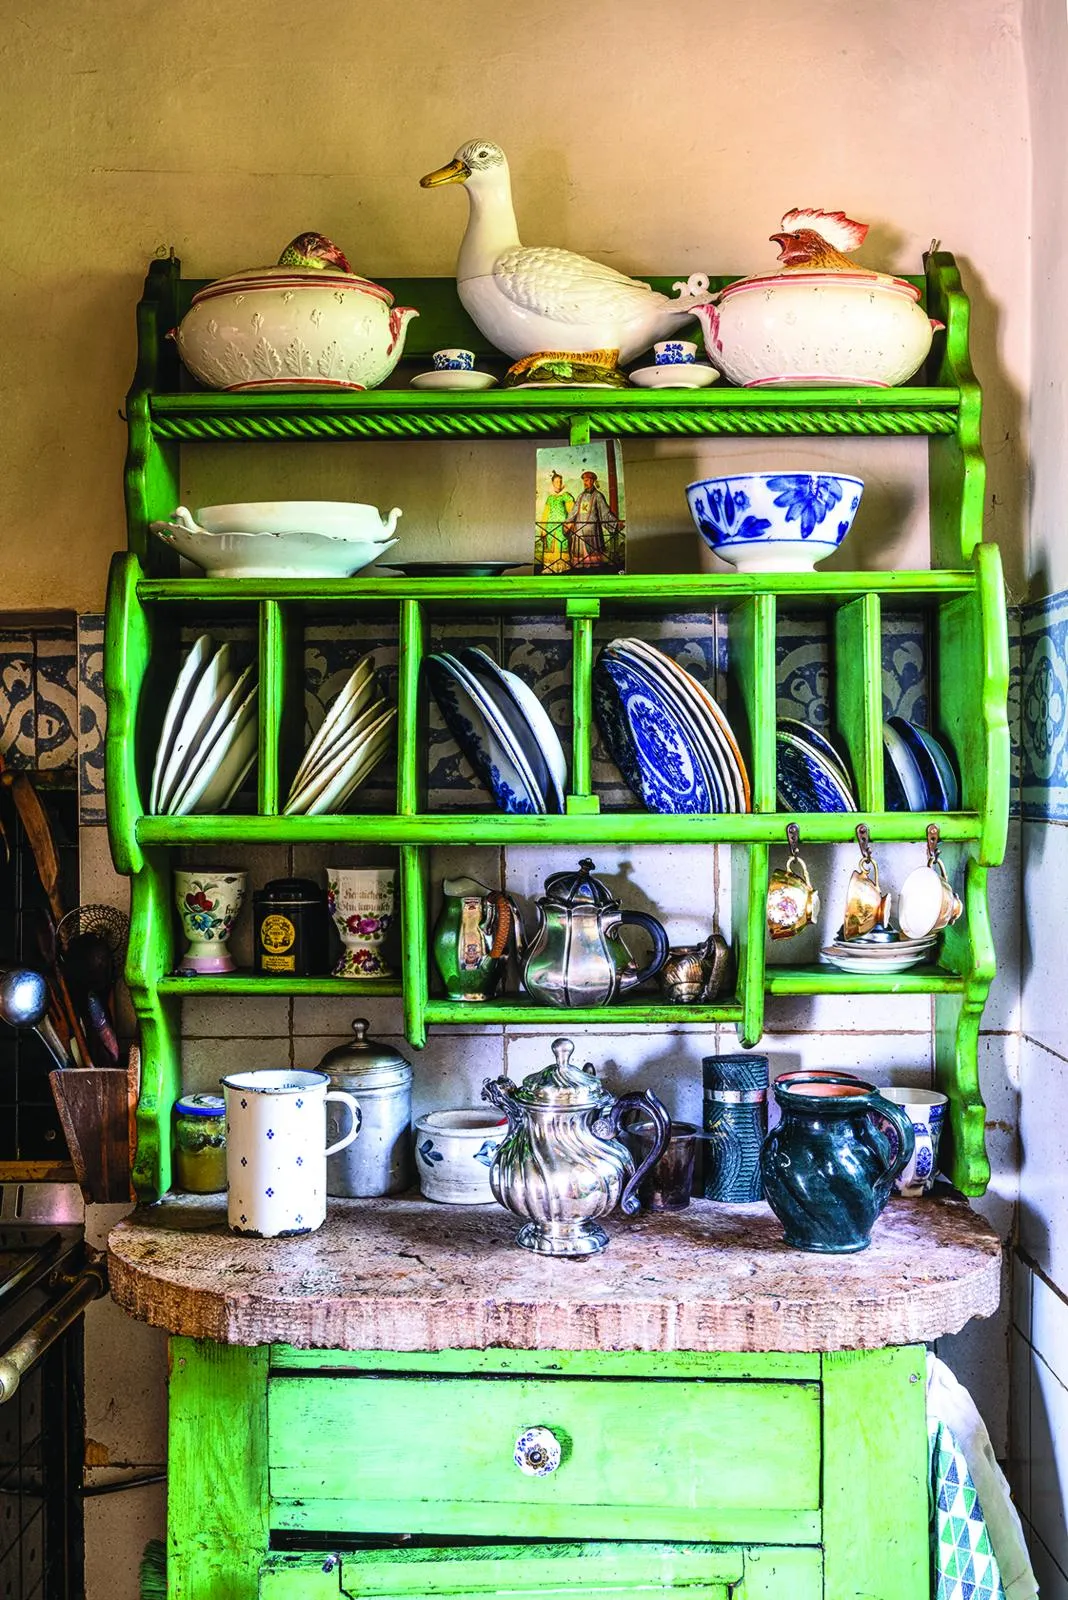 Italian Villa green kitchen shelves